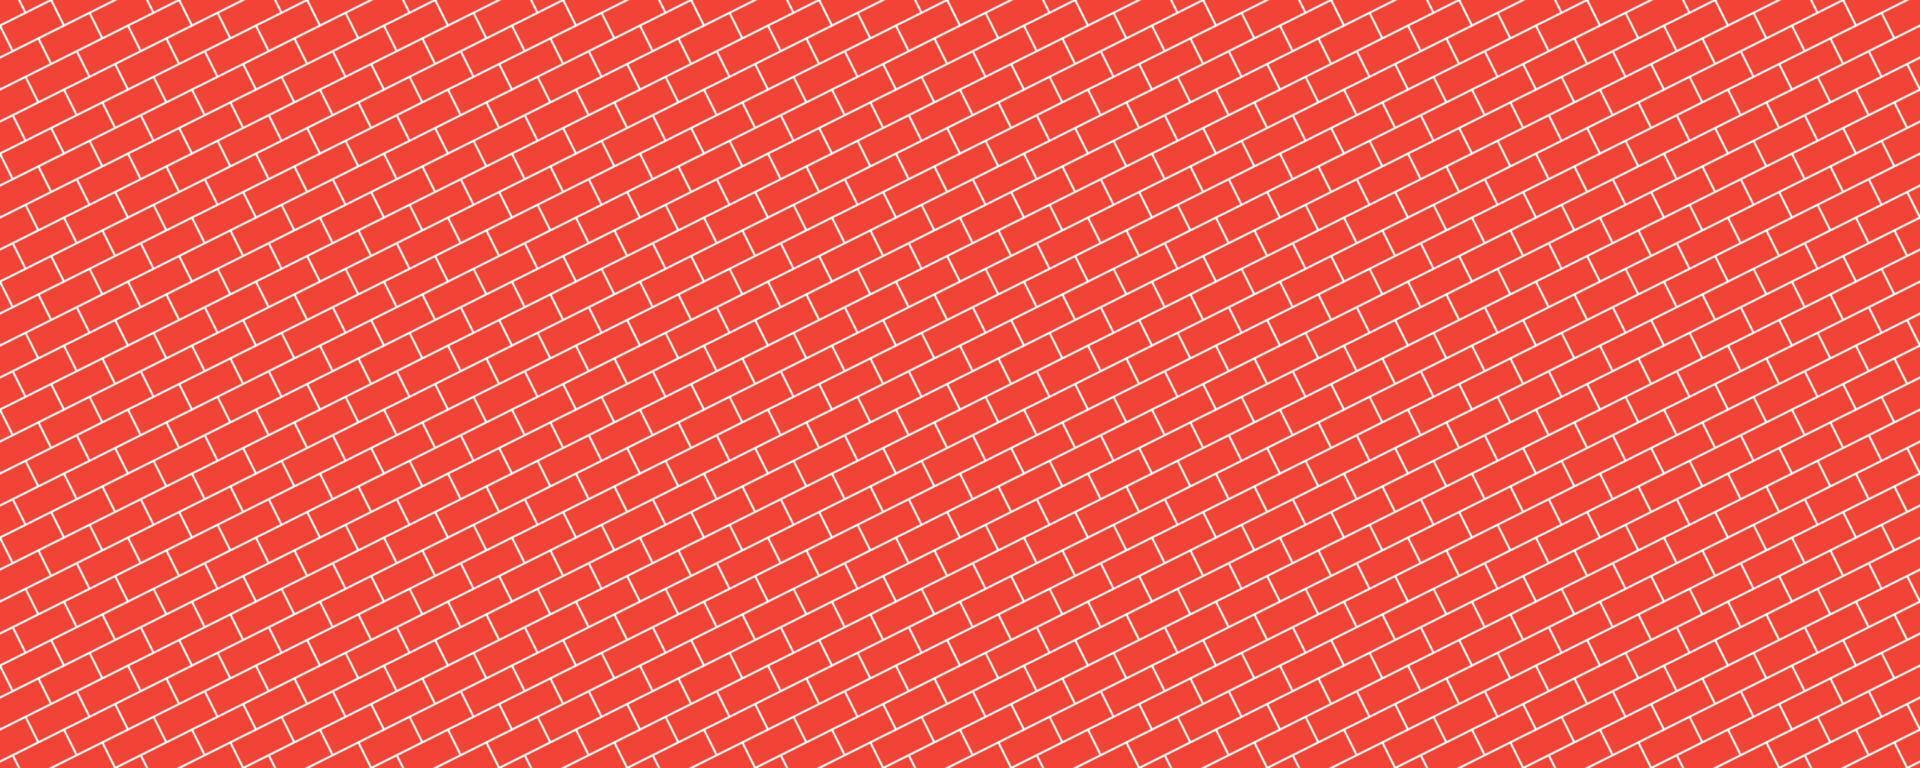 nahtloses muster der roten diagonalen backsteinmauer vektor